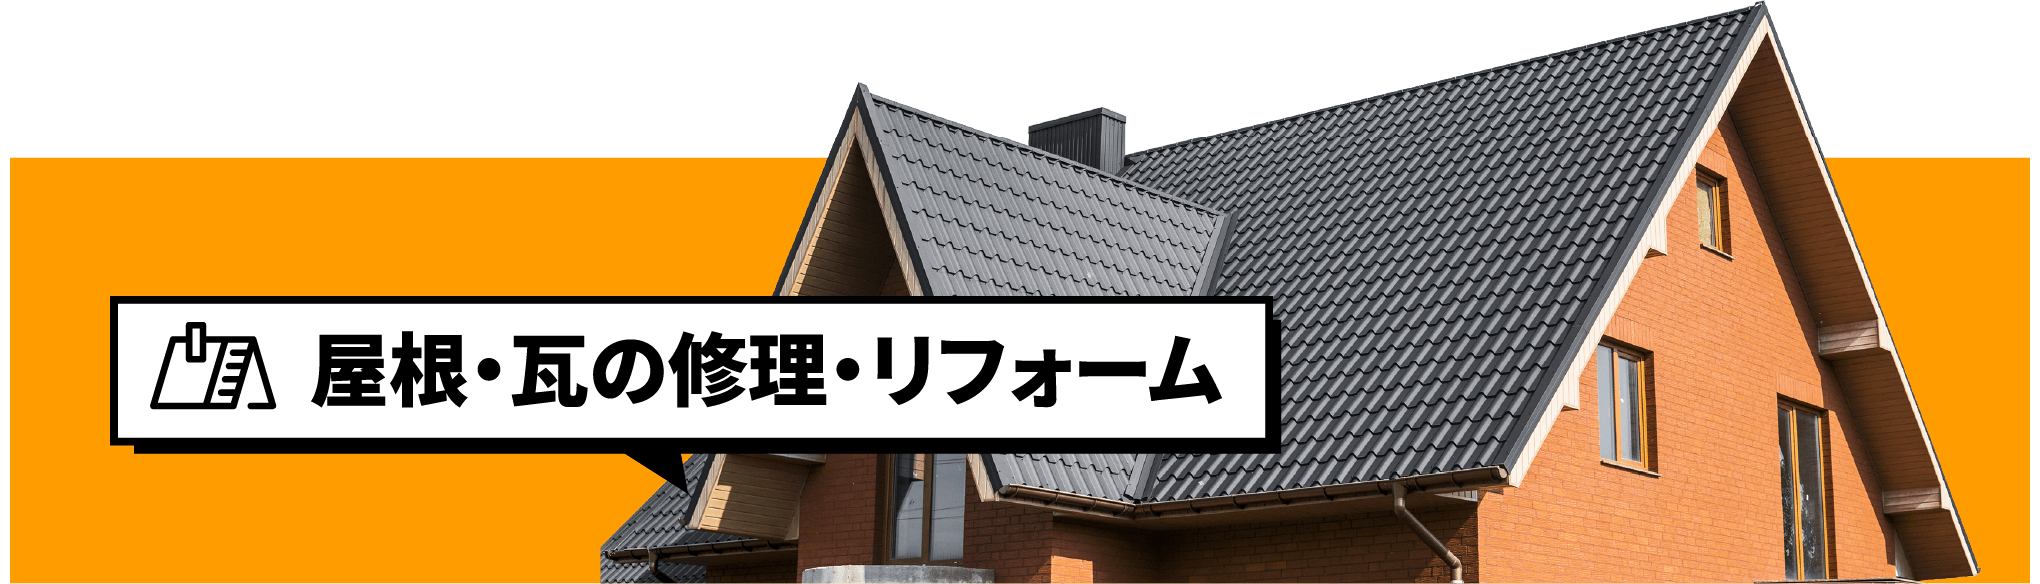 屋根・瓦の修理・リフォーム